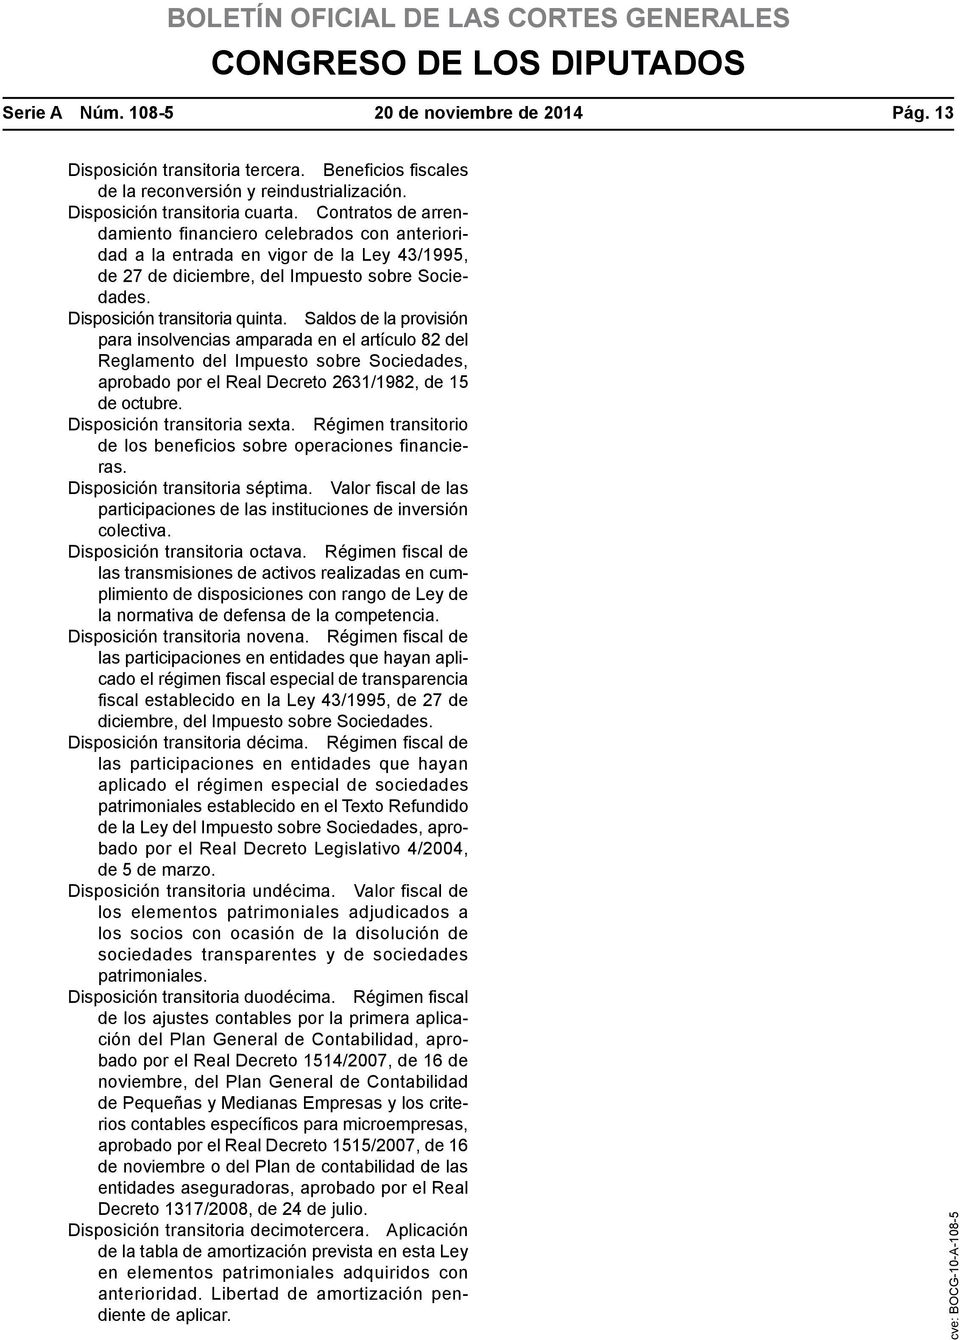 Saldos de la provisión para insolvencias amparada en el artículo 82 del Reglamento del Impuesto sobre Sociedades, aprobado por el Real Decreto 2631/1982, de 15 de octubre.